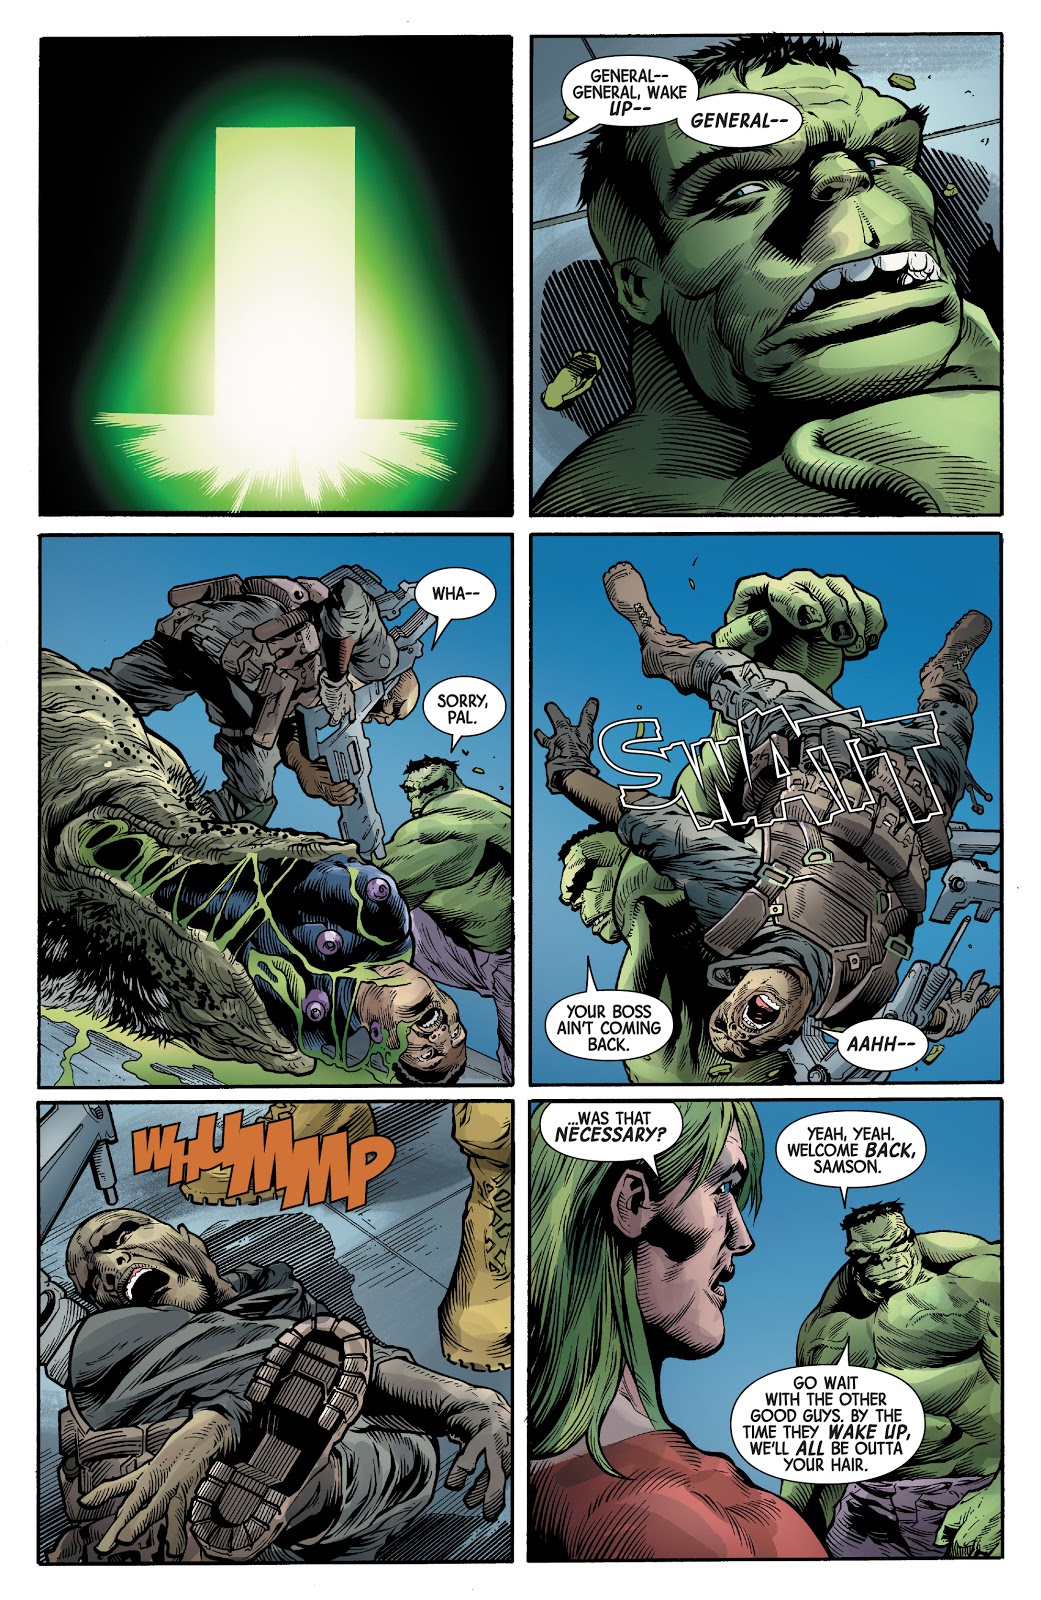 The Immortal Hulk Kills General Fortean